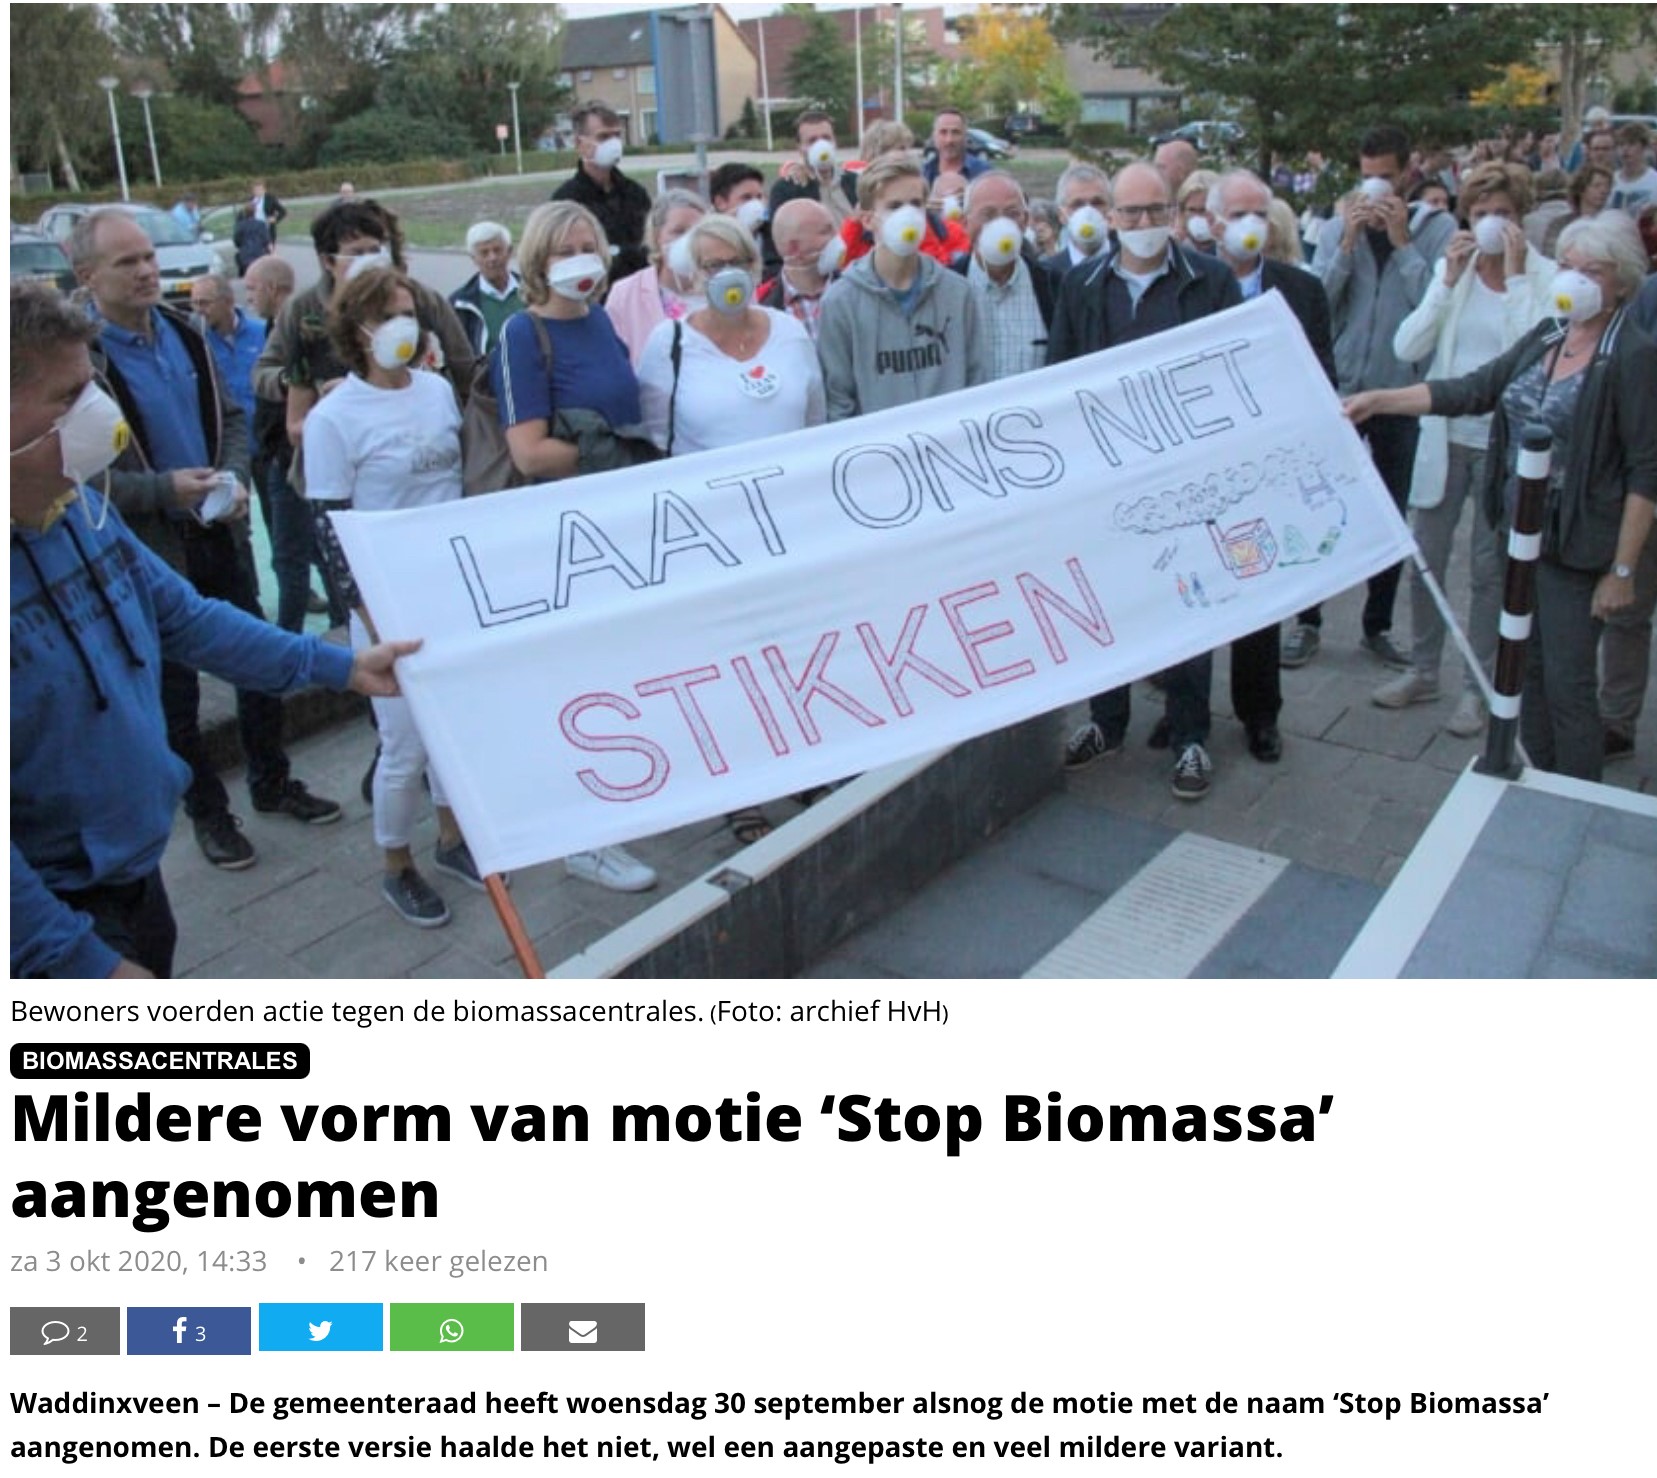 Mildere vorm van motie'Stop Biomassa' aangenomen